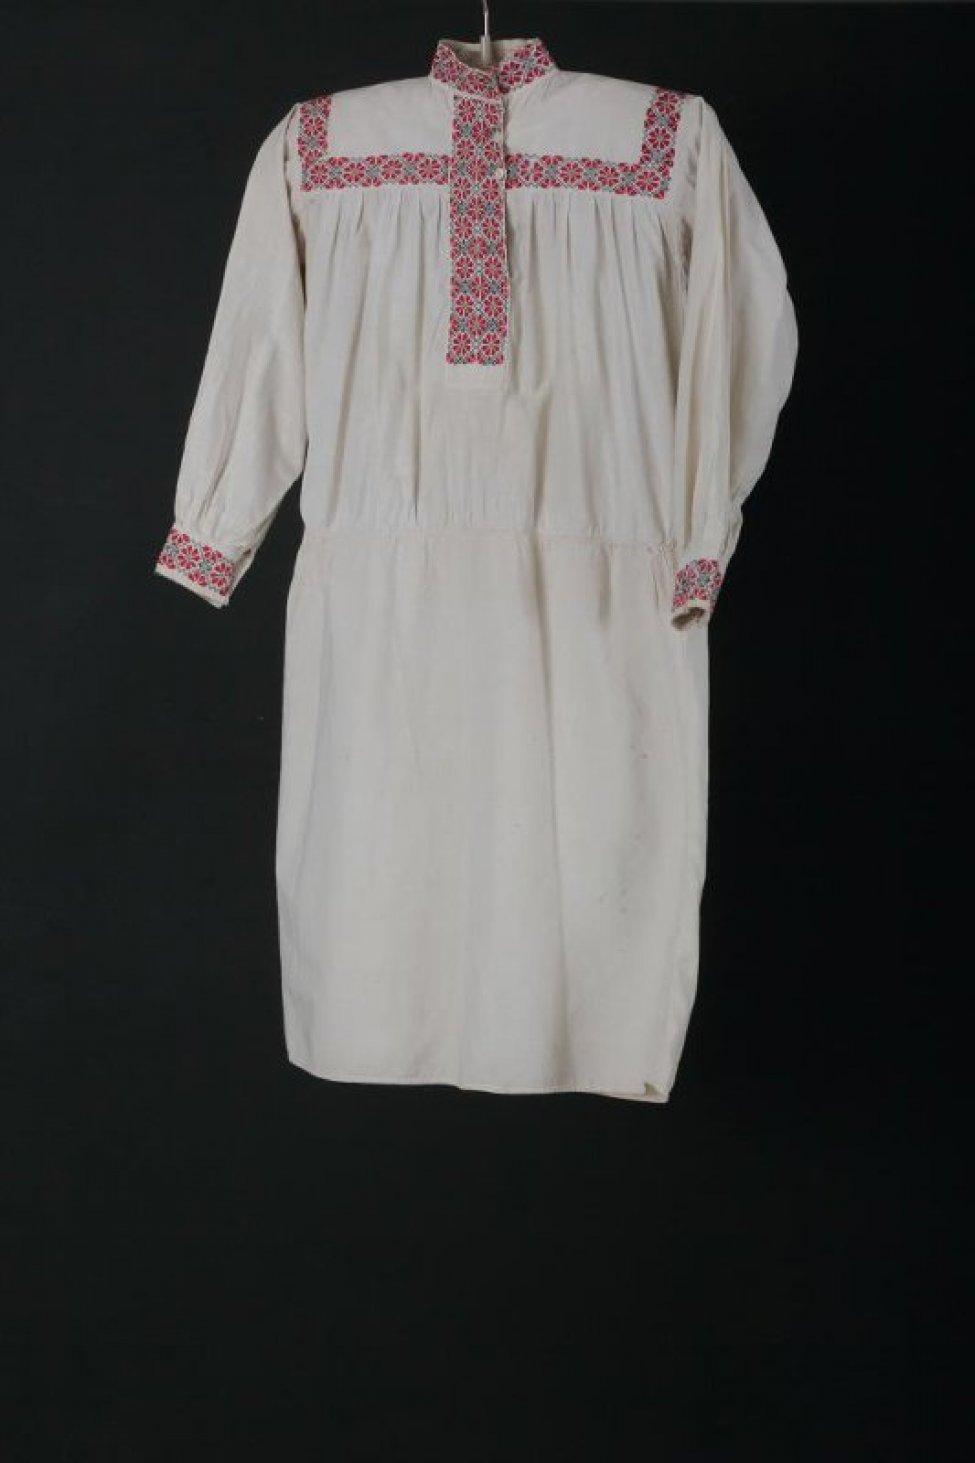 Рубаха туникообразная Русь 13 век